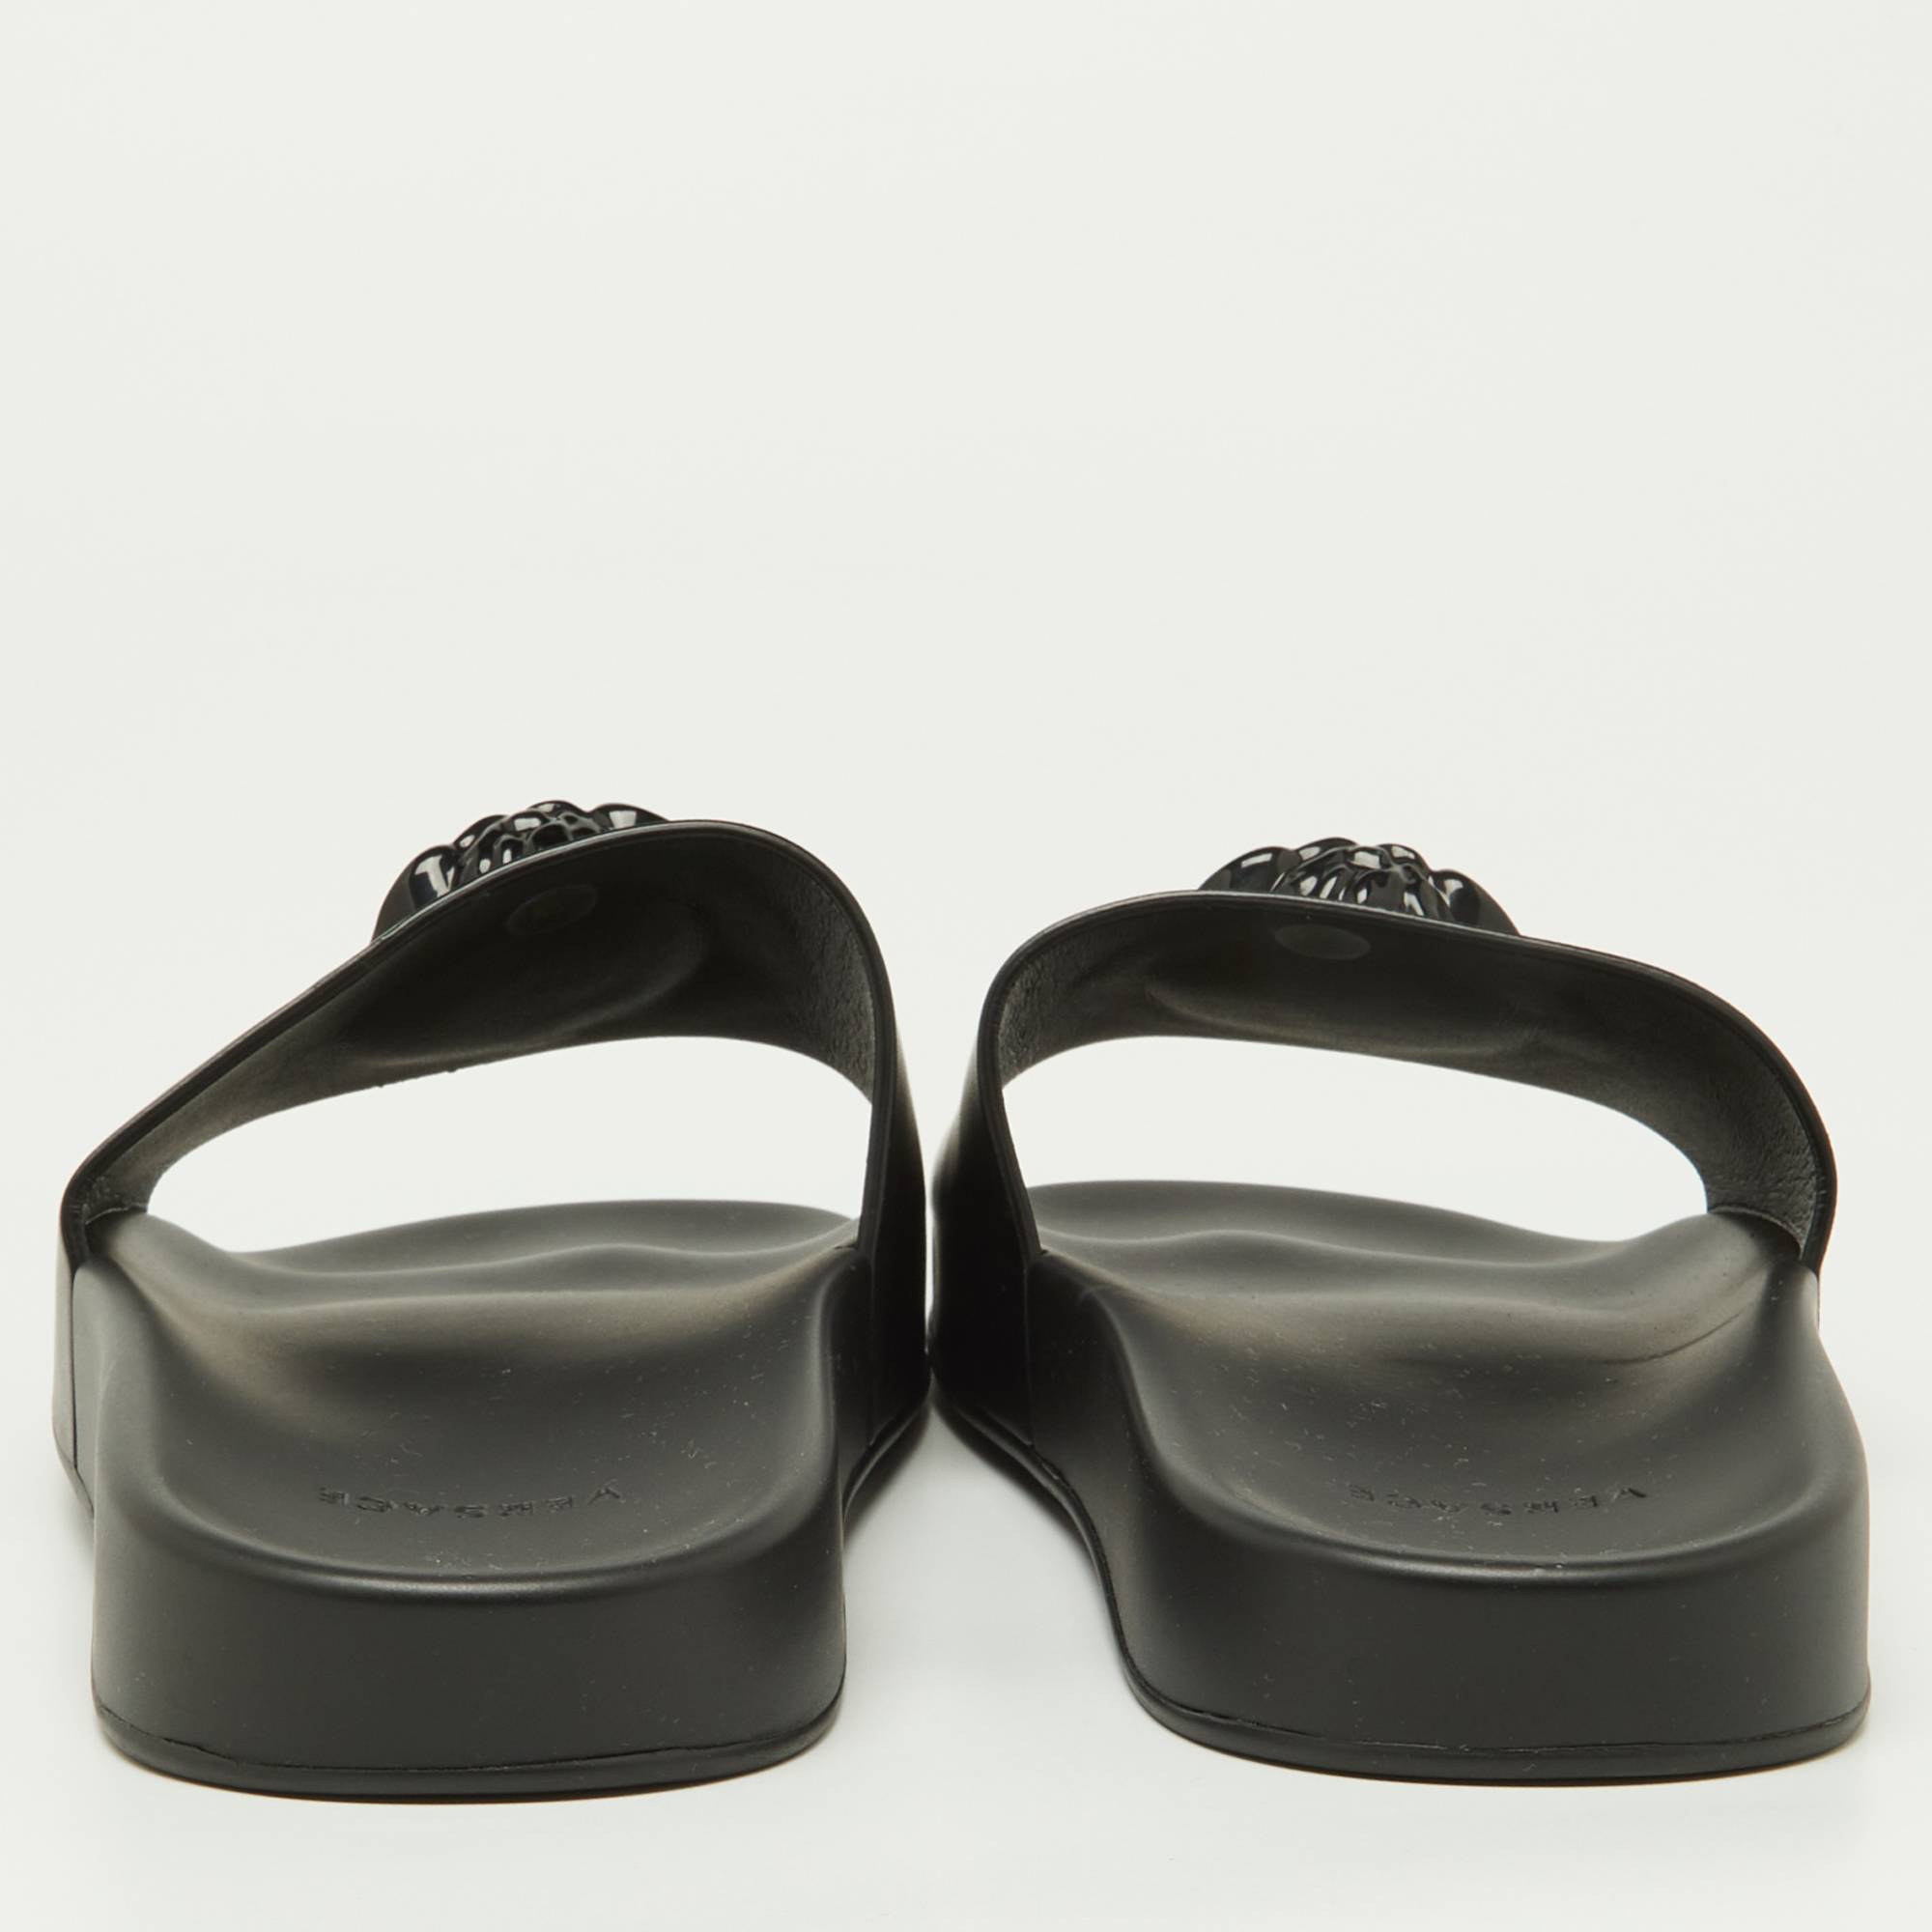 Versace Black Leather Medusa Flat Slide Sandals Size 43